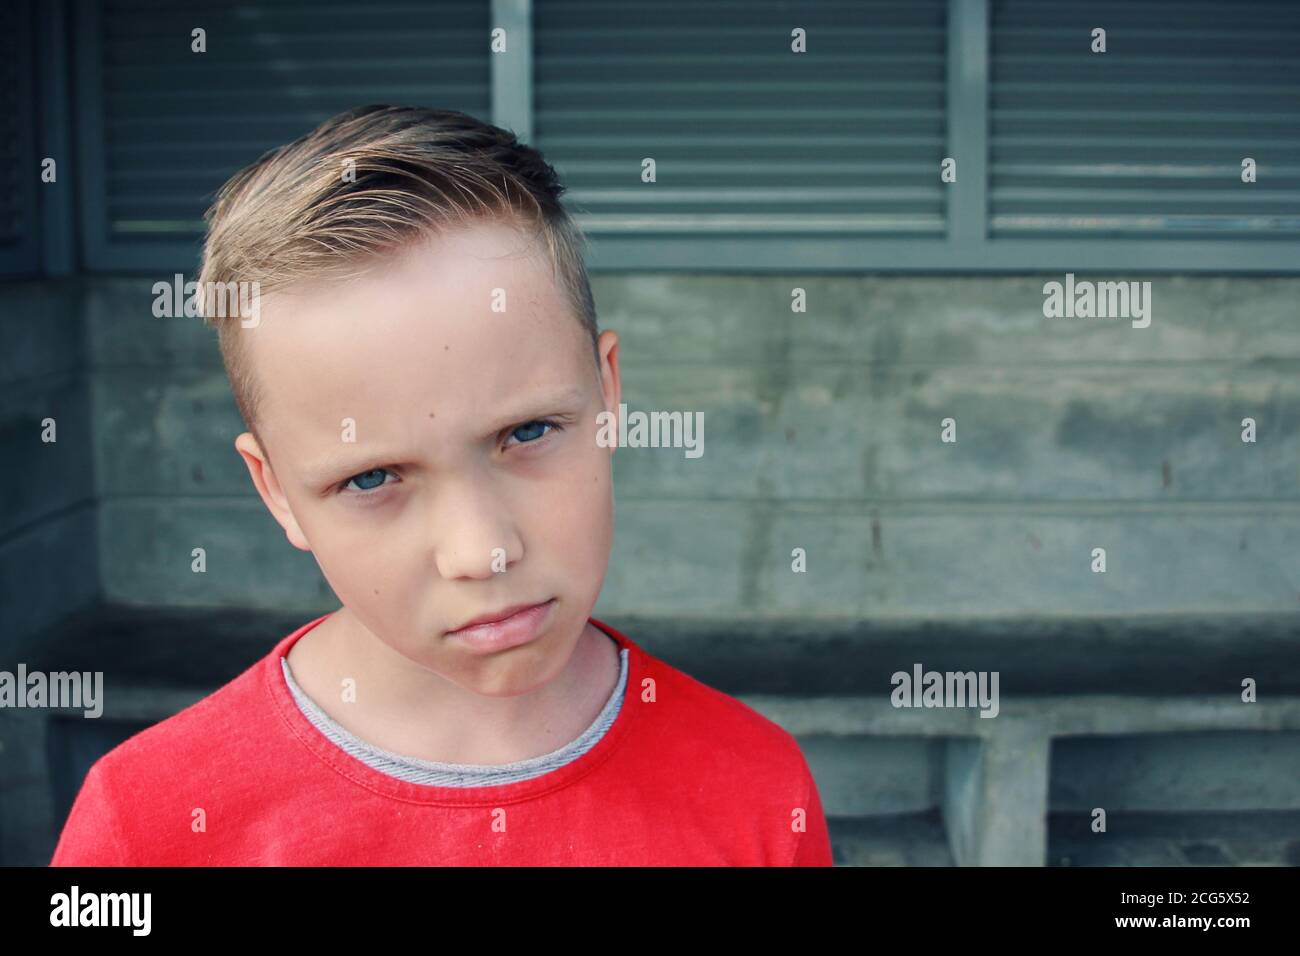 Niedliche kleine blauäugige europäische blonde Junge sieht traurig und frustriert. Er schaut mit Trauer nachdenklicher Ausdruck in seinem Gesicht.emotionaler Ausdruck Gesicht. Stockfoto